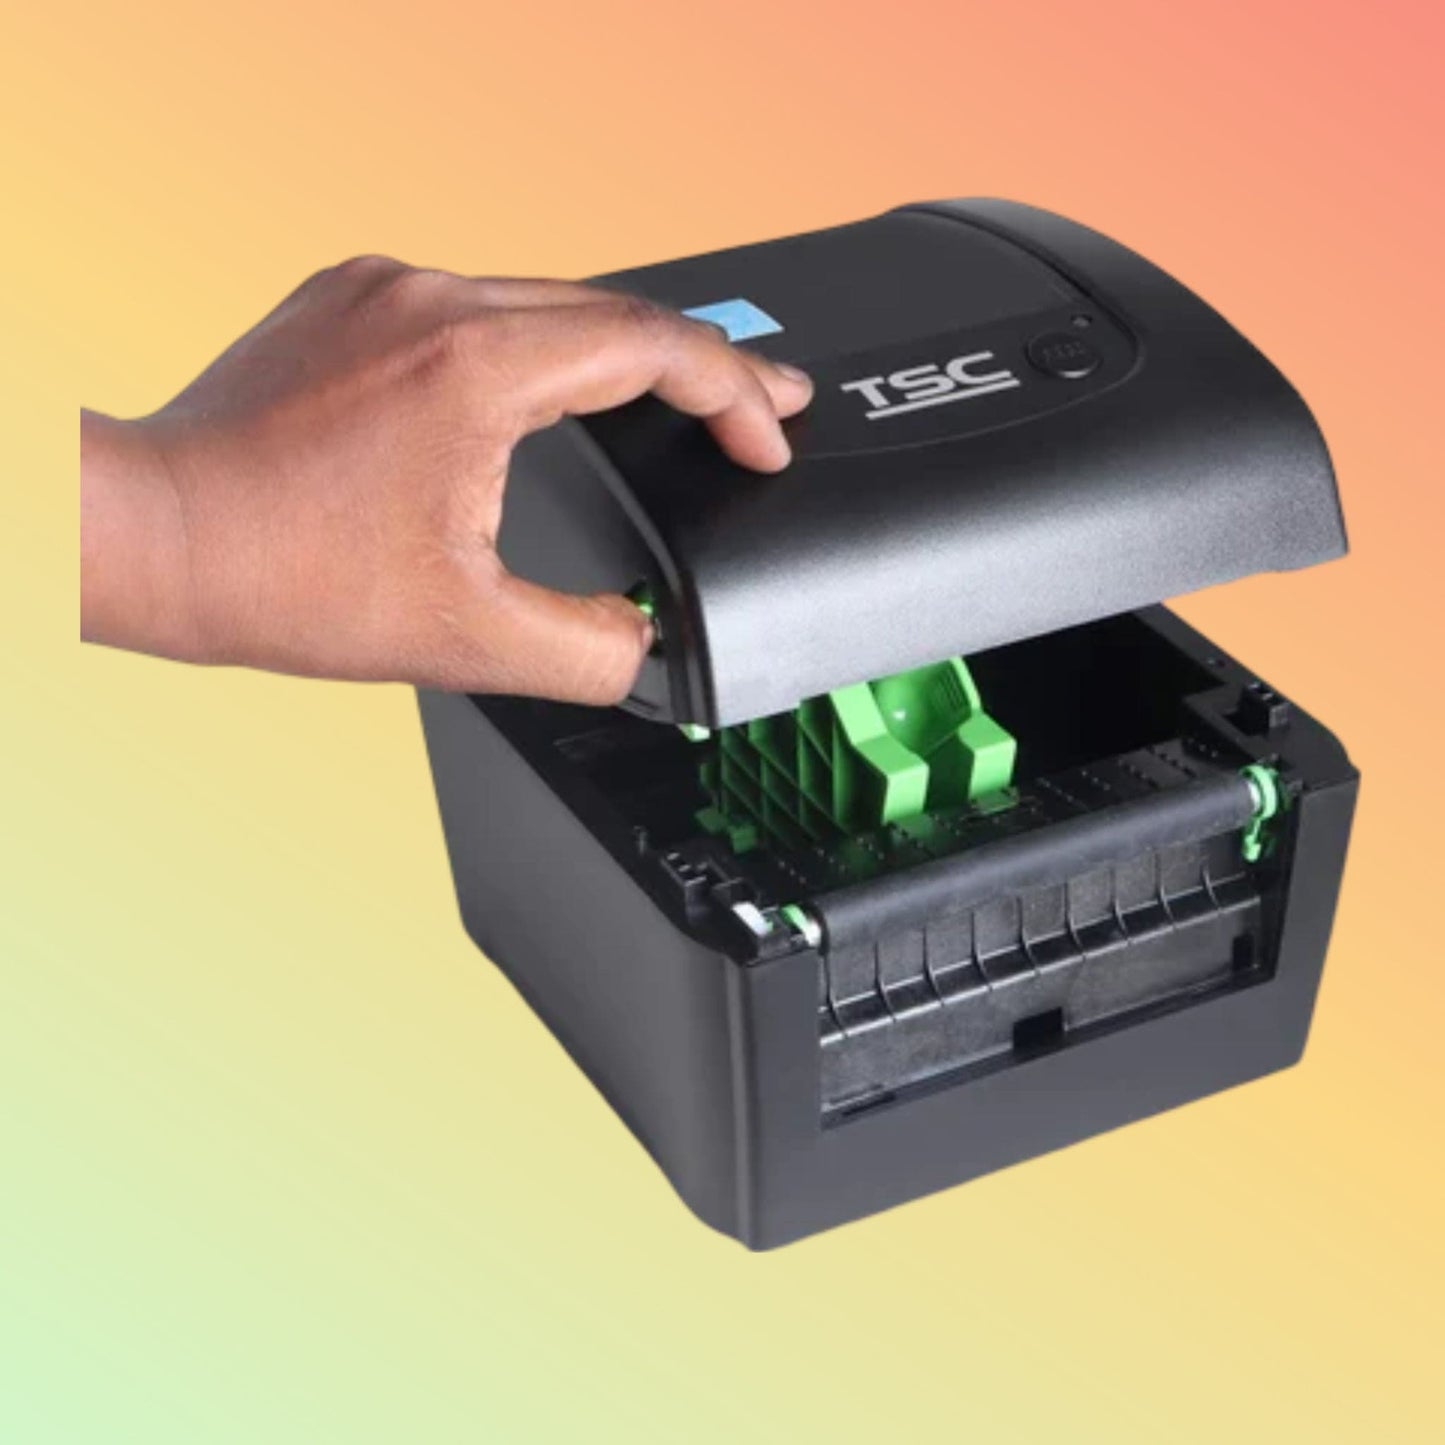 TSC DA210 Desktop Label Printer - NEOTECH